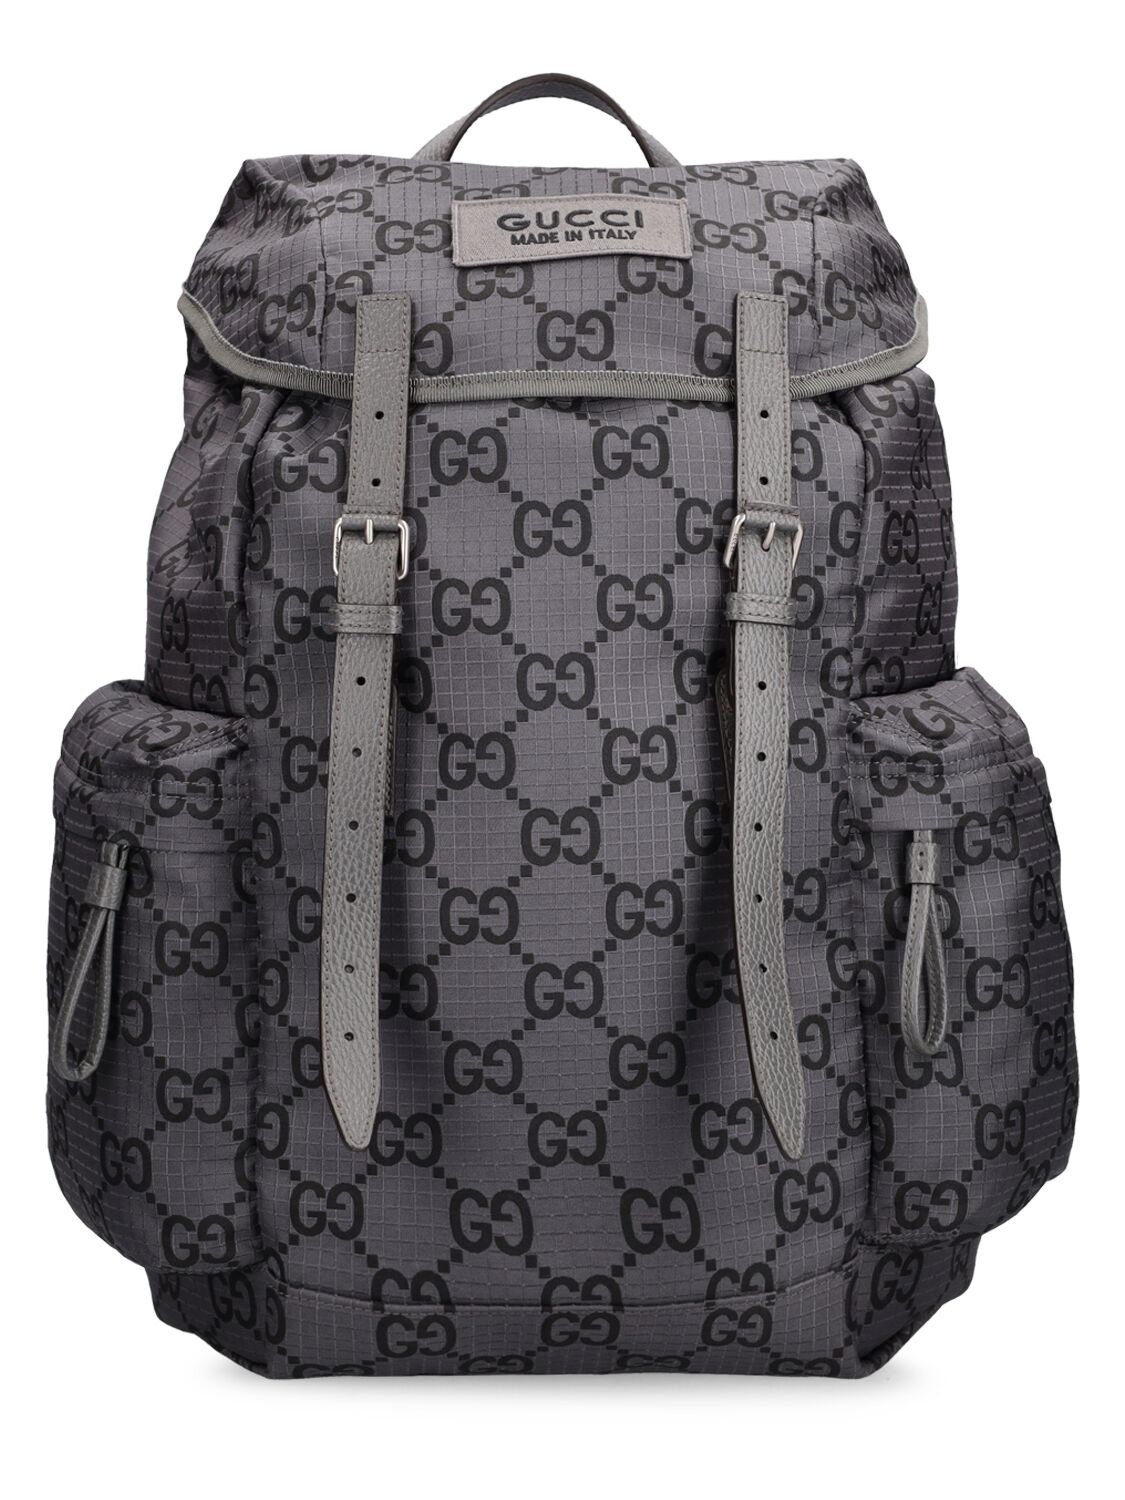 Gg Ripstop Nylon Backpack